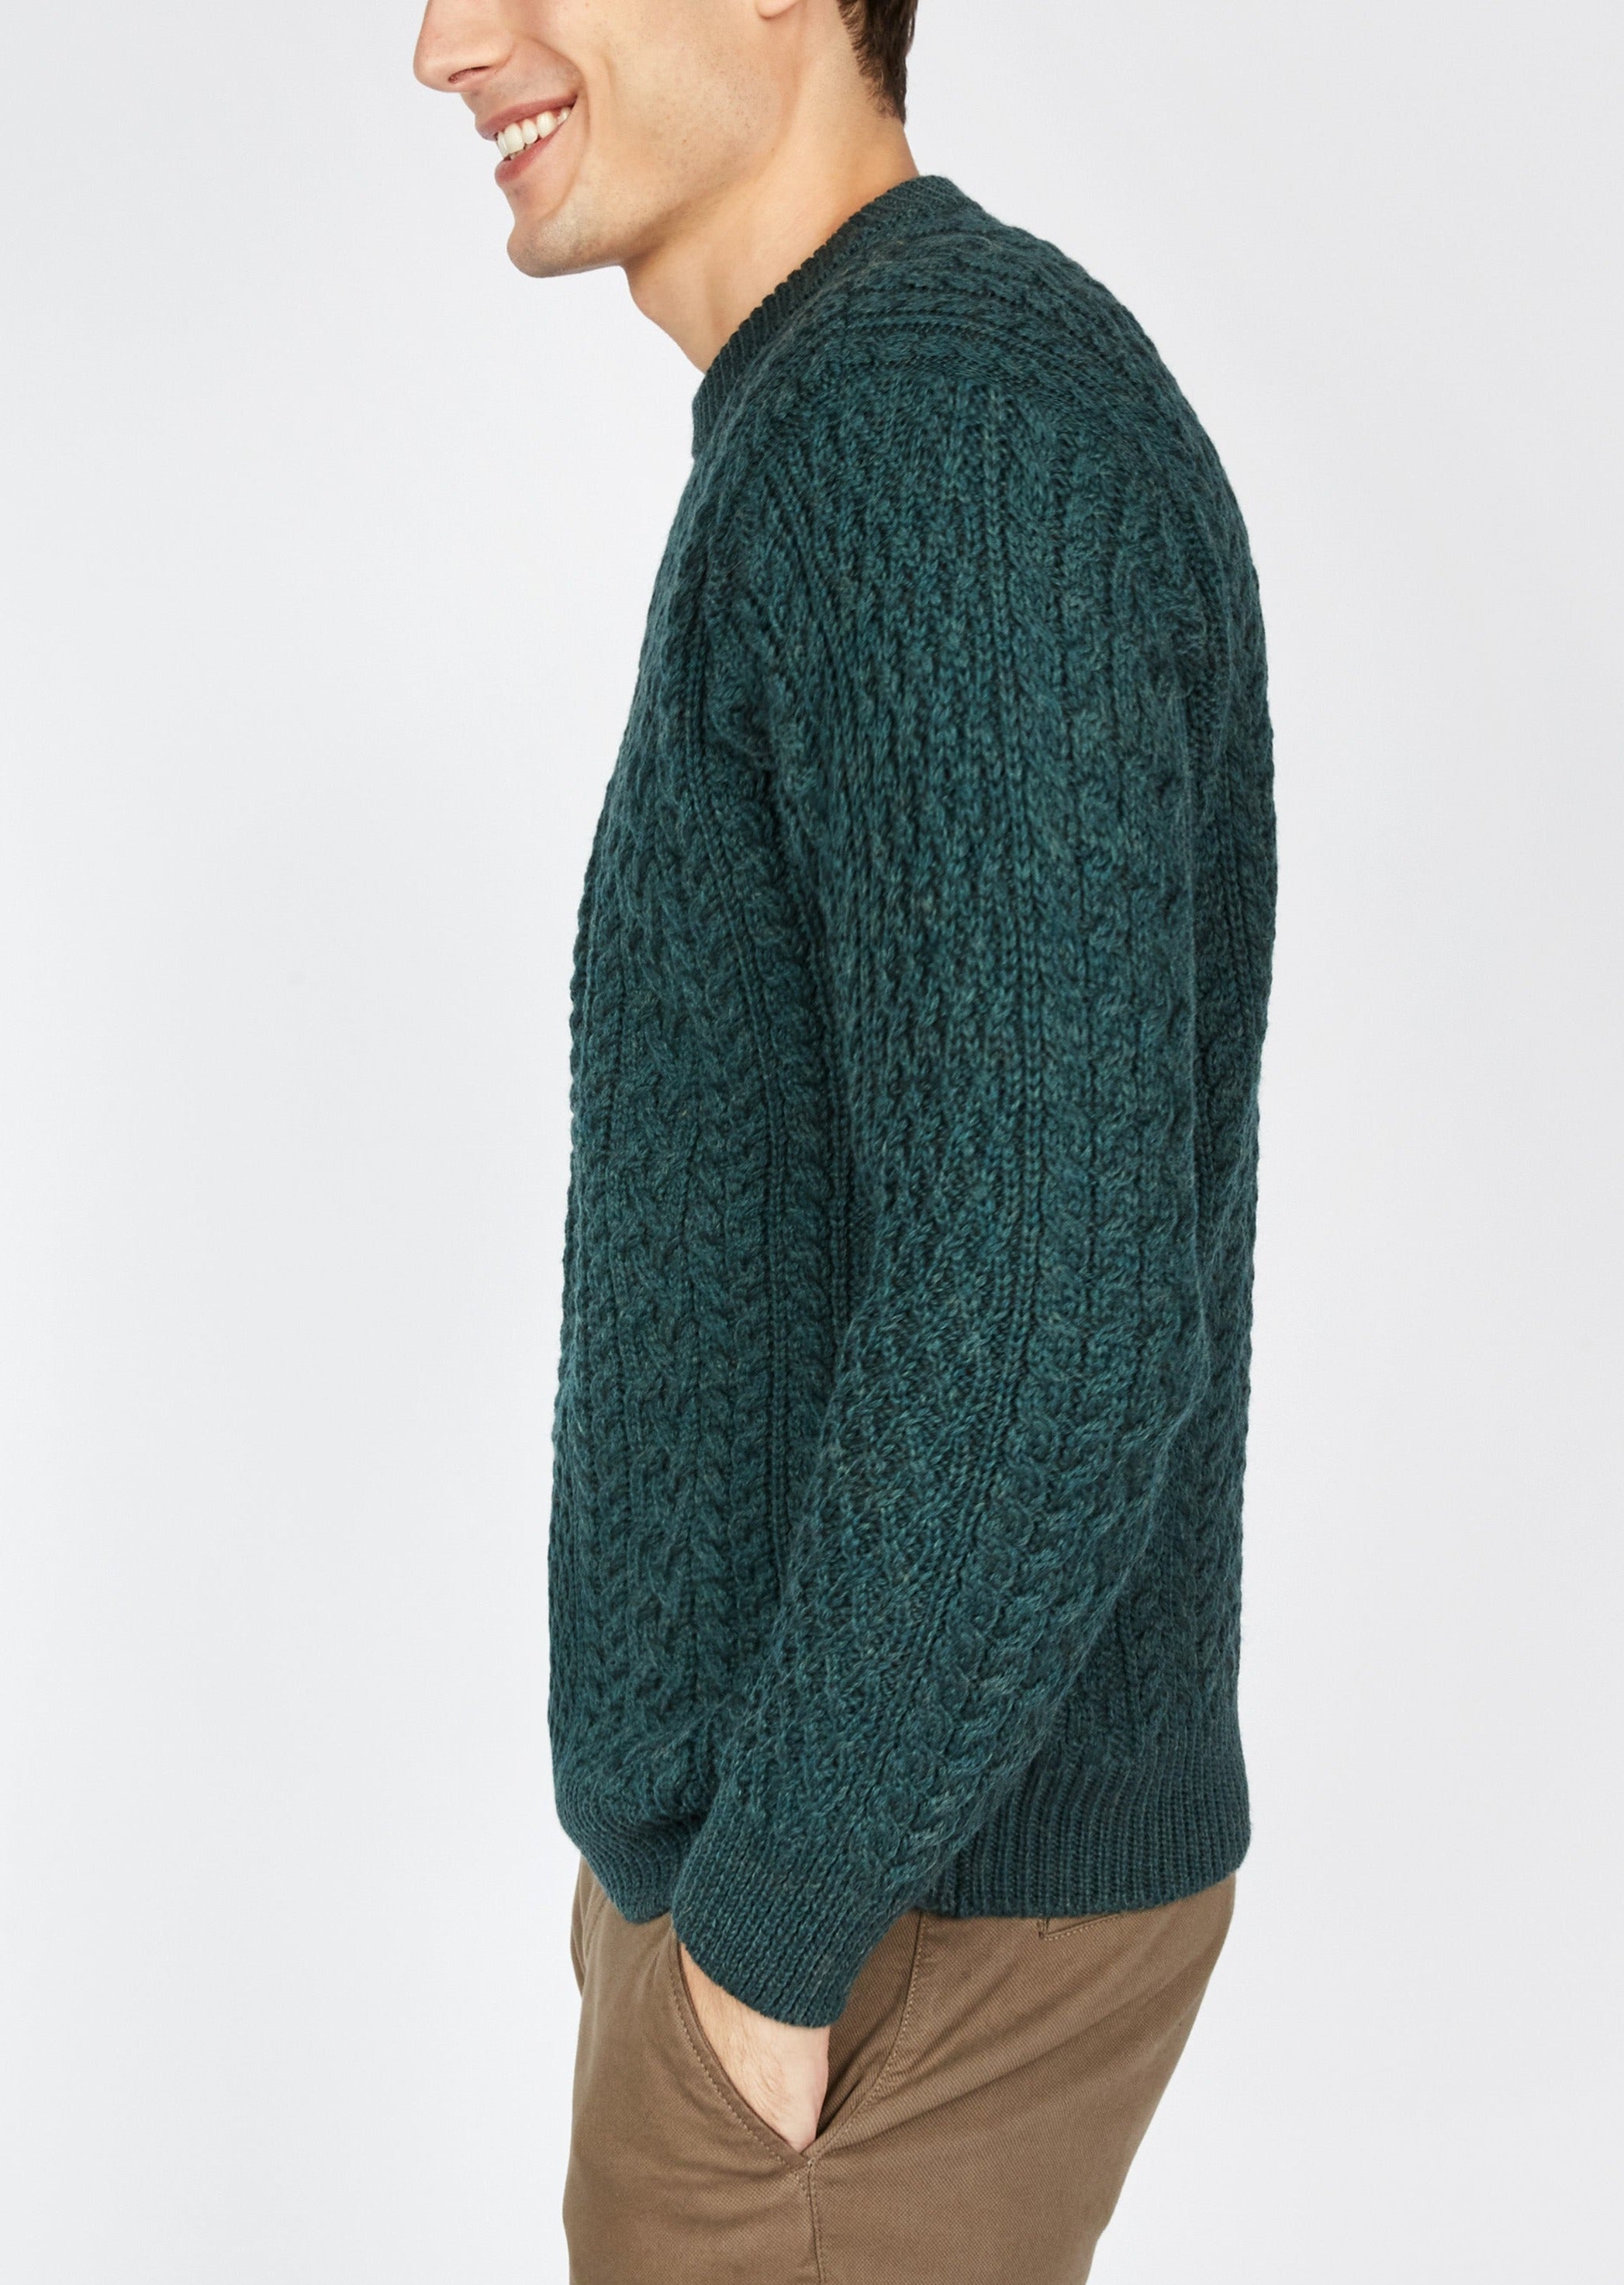 IrelandsEye Cuileann Aran Sweater | Green